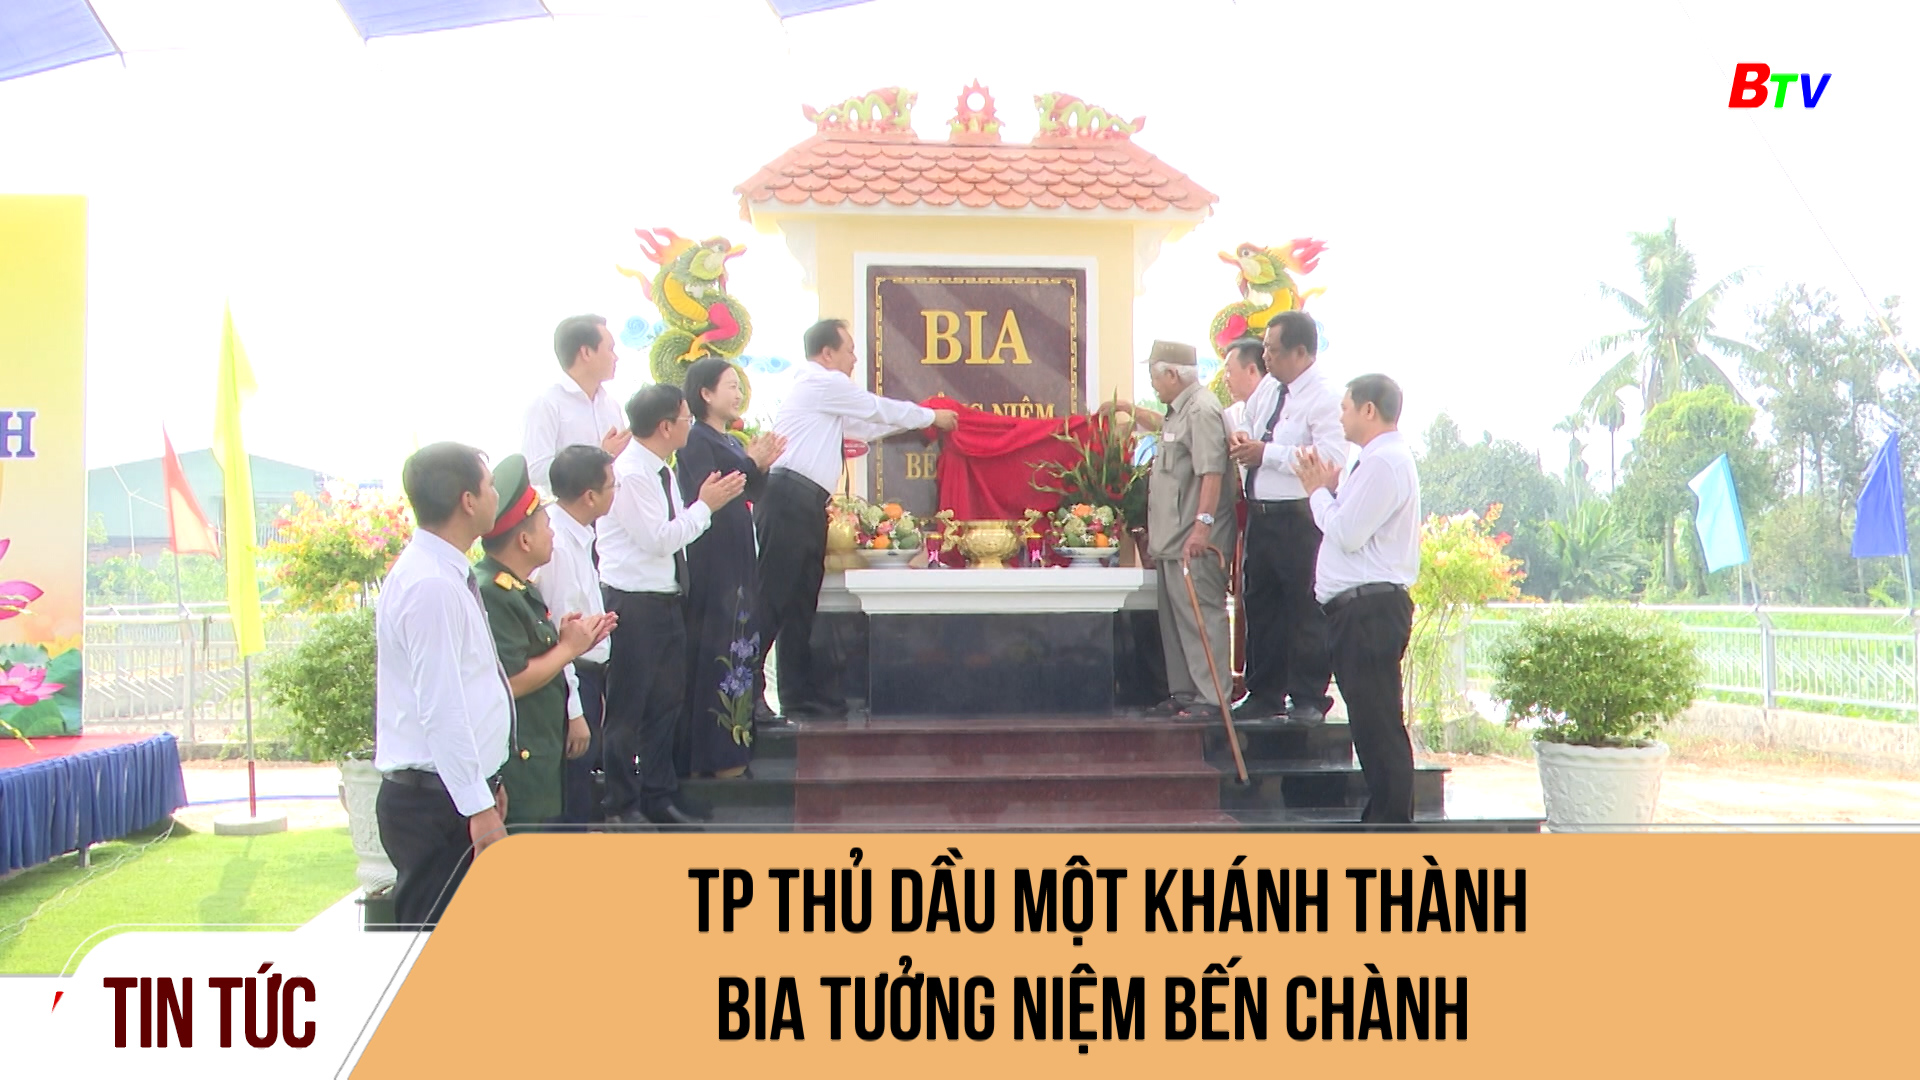 TP Thủ Dầu Một khánh thành bia tưởng niệm Bến Chành	